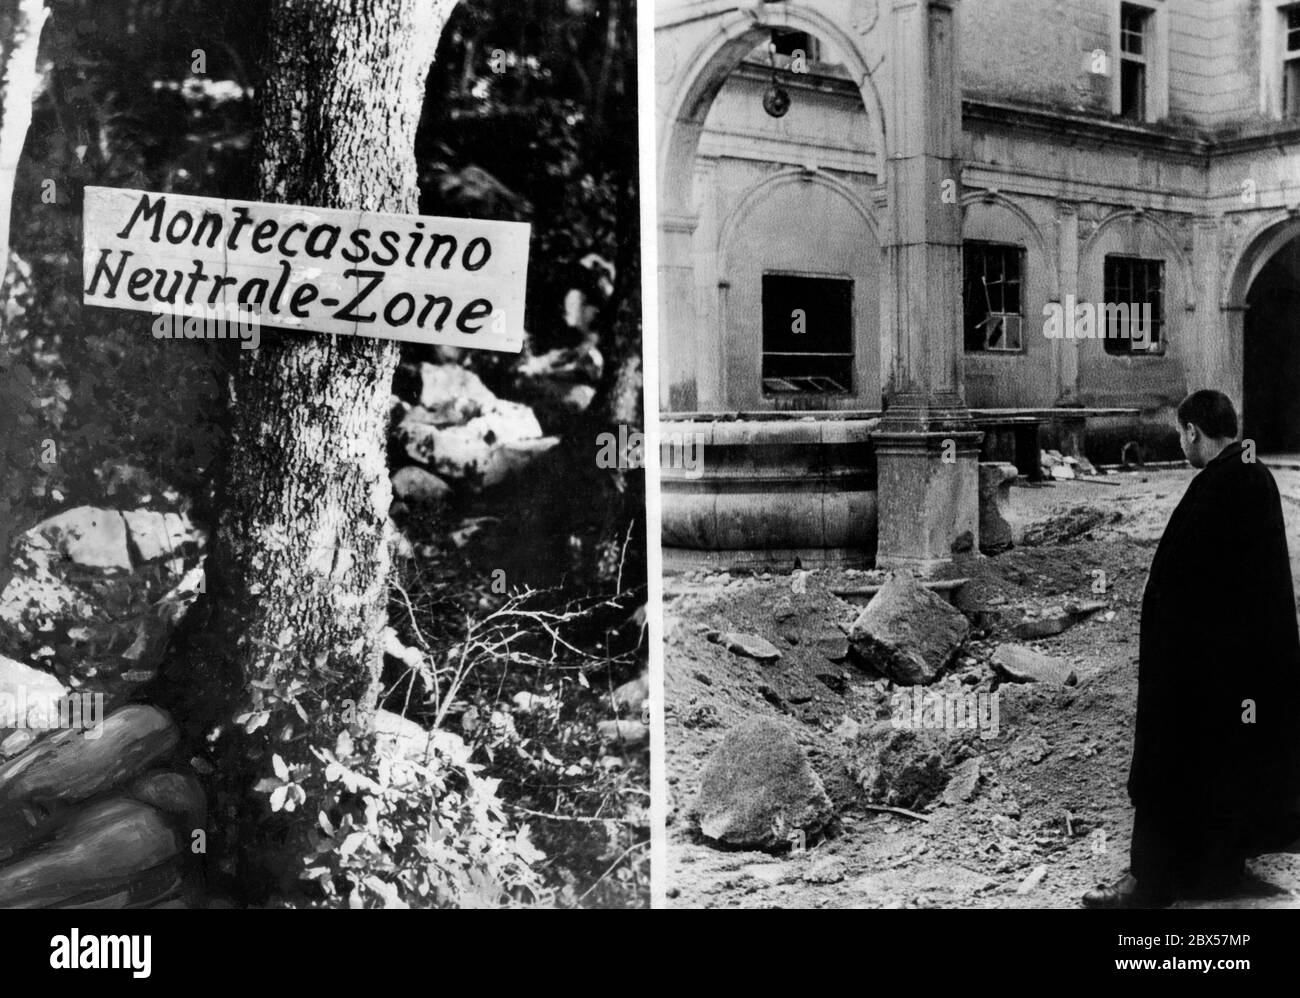 Sinistra: Immagine ritoccata con il segno 'Montecassino Neutral zone'. A destra: Monaco nel cortile della distrutta Abbazia di Montecassino. Foto Stock